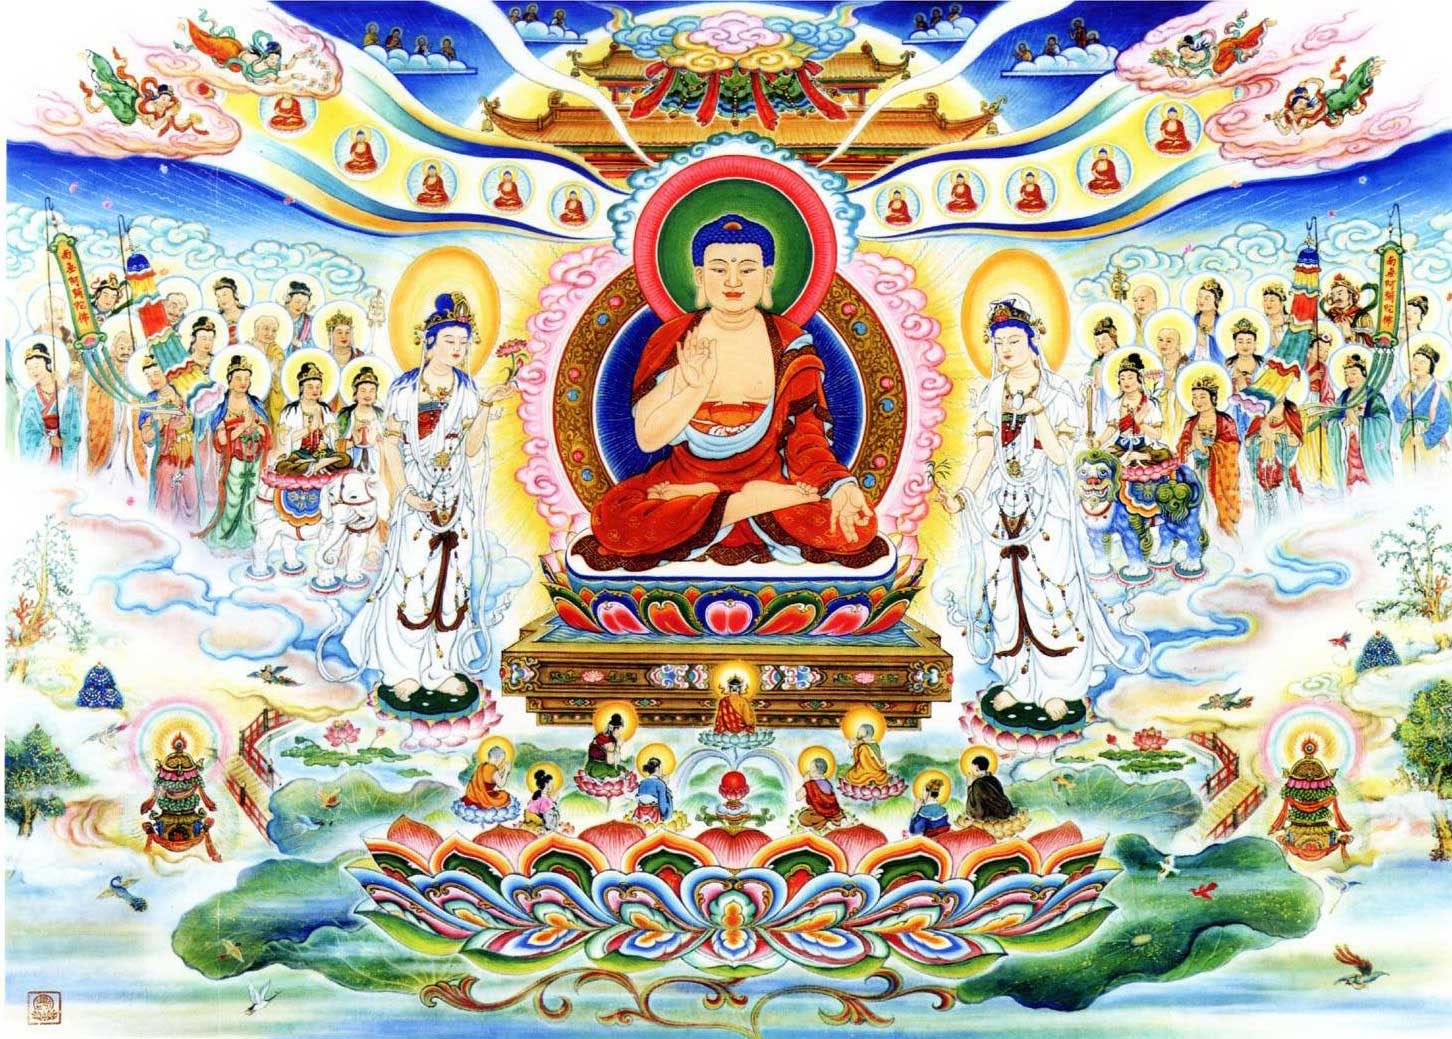 Hình ảnh Phật – Chứng kiến những hình ảnh Phật đầy tâm linh và ý nghĩa sẽ giúp bạn trang trí tâm hồn và mang đến niềm động viên cho cuộc sống của mình.